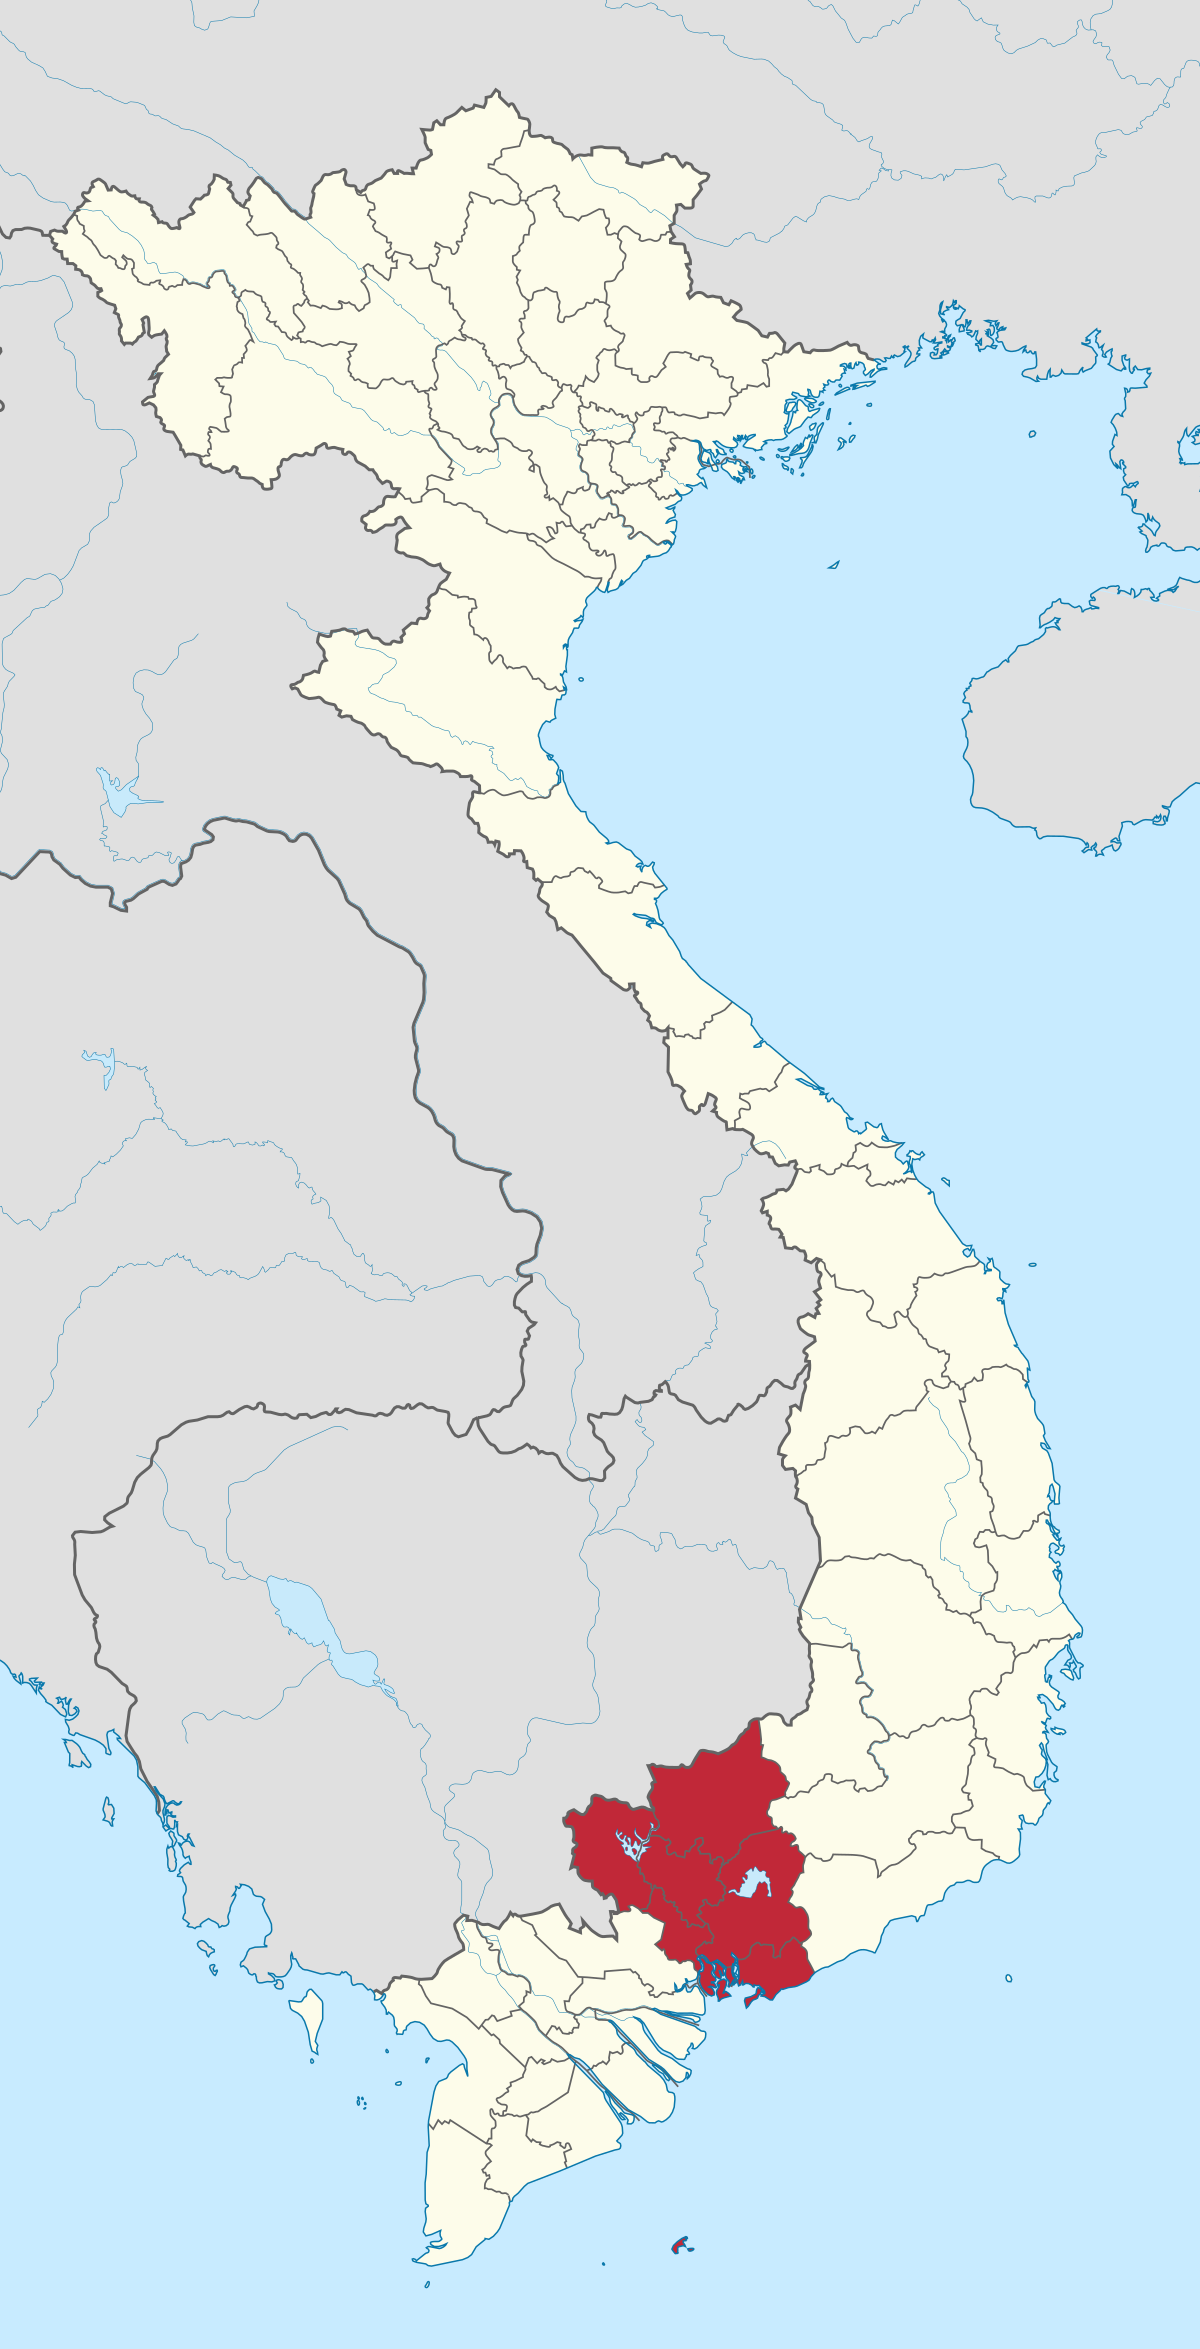 Với Wikipedia Đông Nam Bộ, bạn có thể tìm hiểu về lịch sử, văn hóa và địa lý của địa phương này một cách khoa học và chính xác nhất. Hãy truy cập và khám phá những điều thú vị về Đông Nam Bộ.